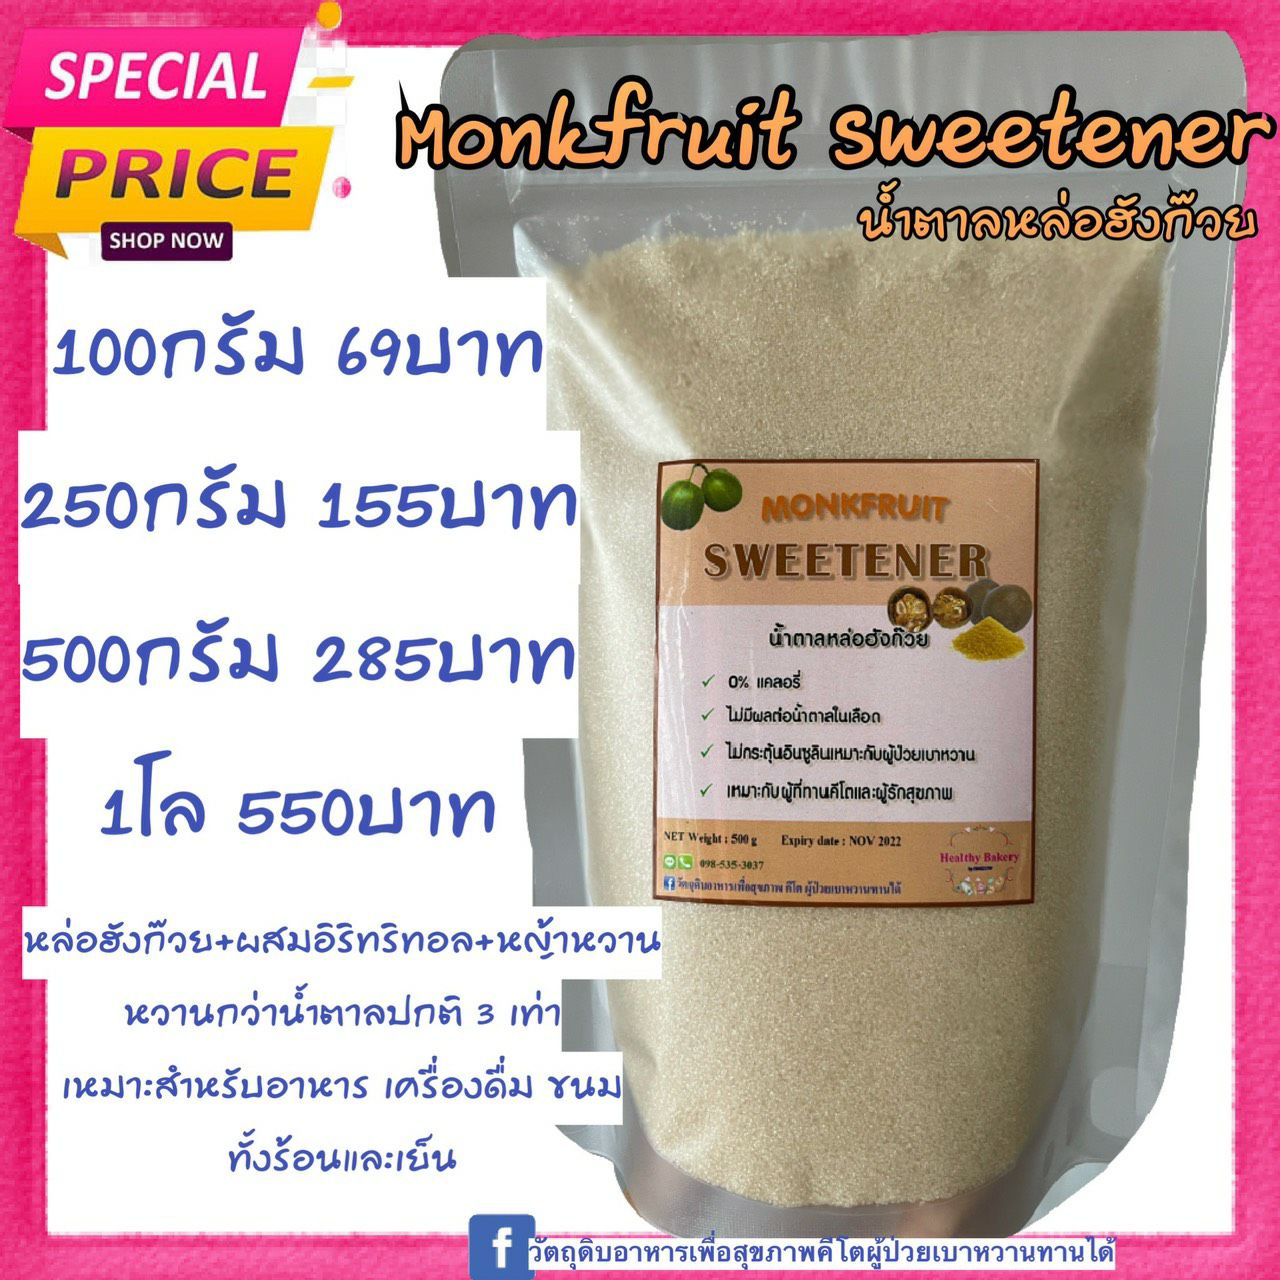 ?สินค้าใหม่?น้ำตาลหล่อฮังก๊วยหวานกว่าน้ำตาลปกติ3 เท่า น้ำตาลหล่อฮังก๊วย (หล่อฮังก๊วยผสมอิริทริทอล)monkfruit sweetener keto